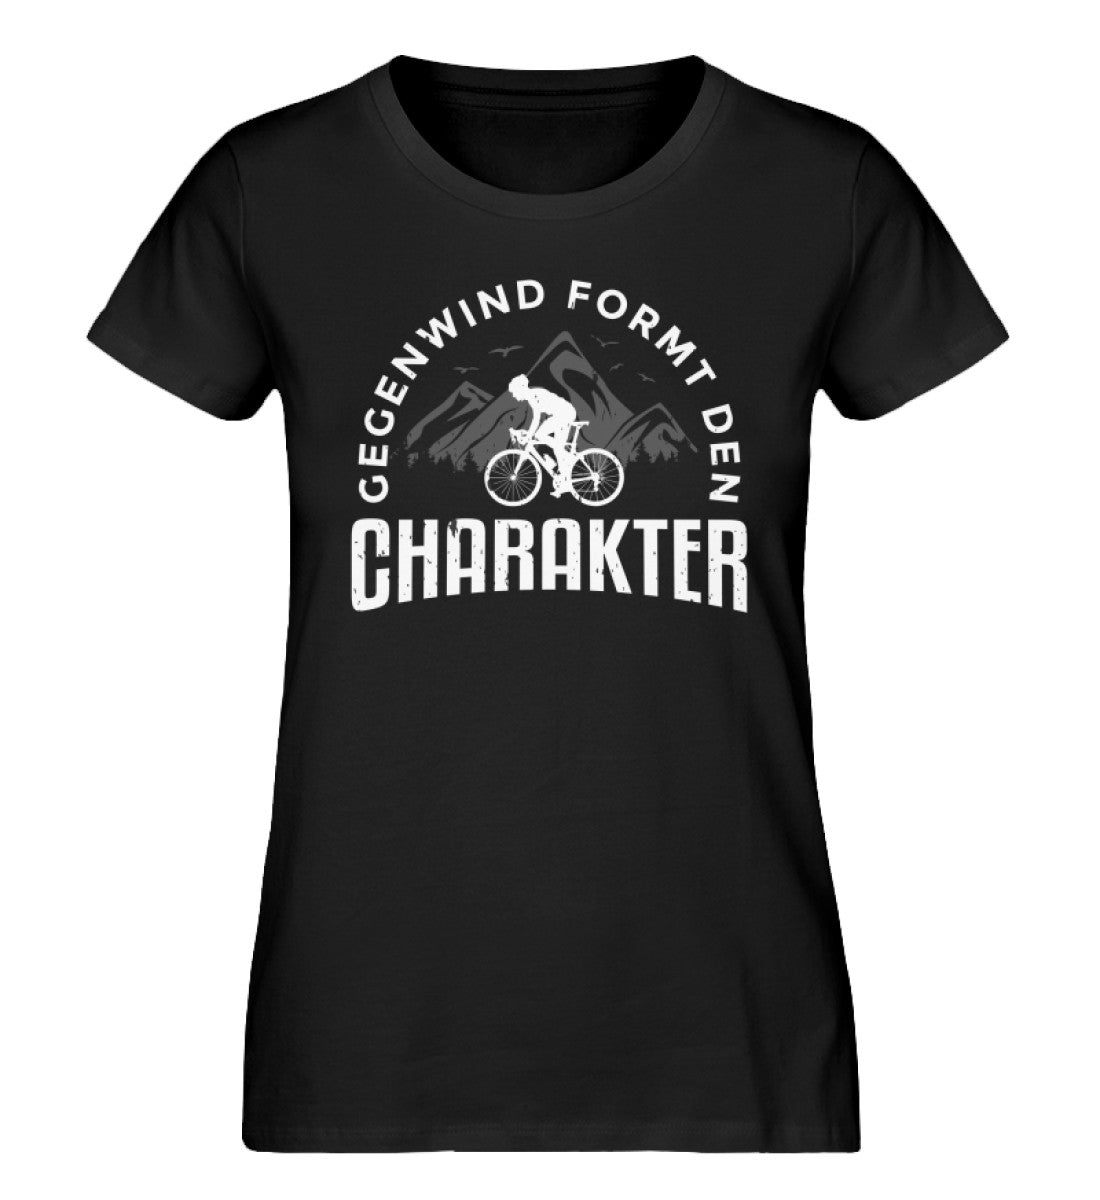 Gegenwind formt den Charakter - Damen Organic T-Shirt fahrrad mountainbike Schwarz